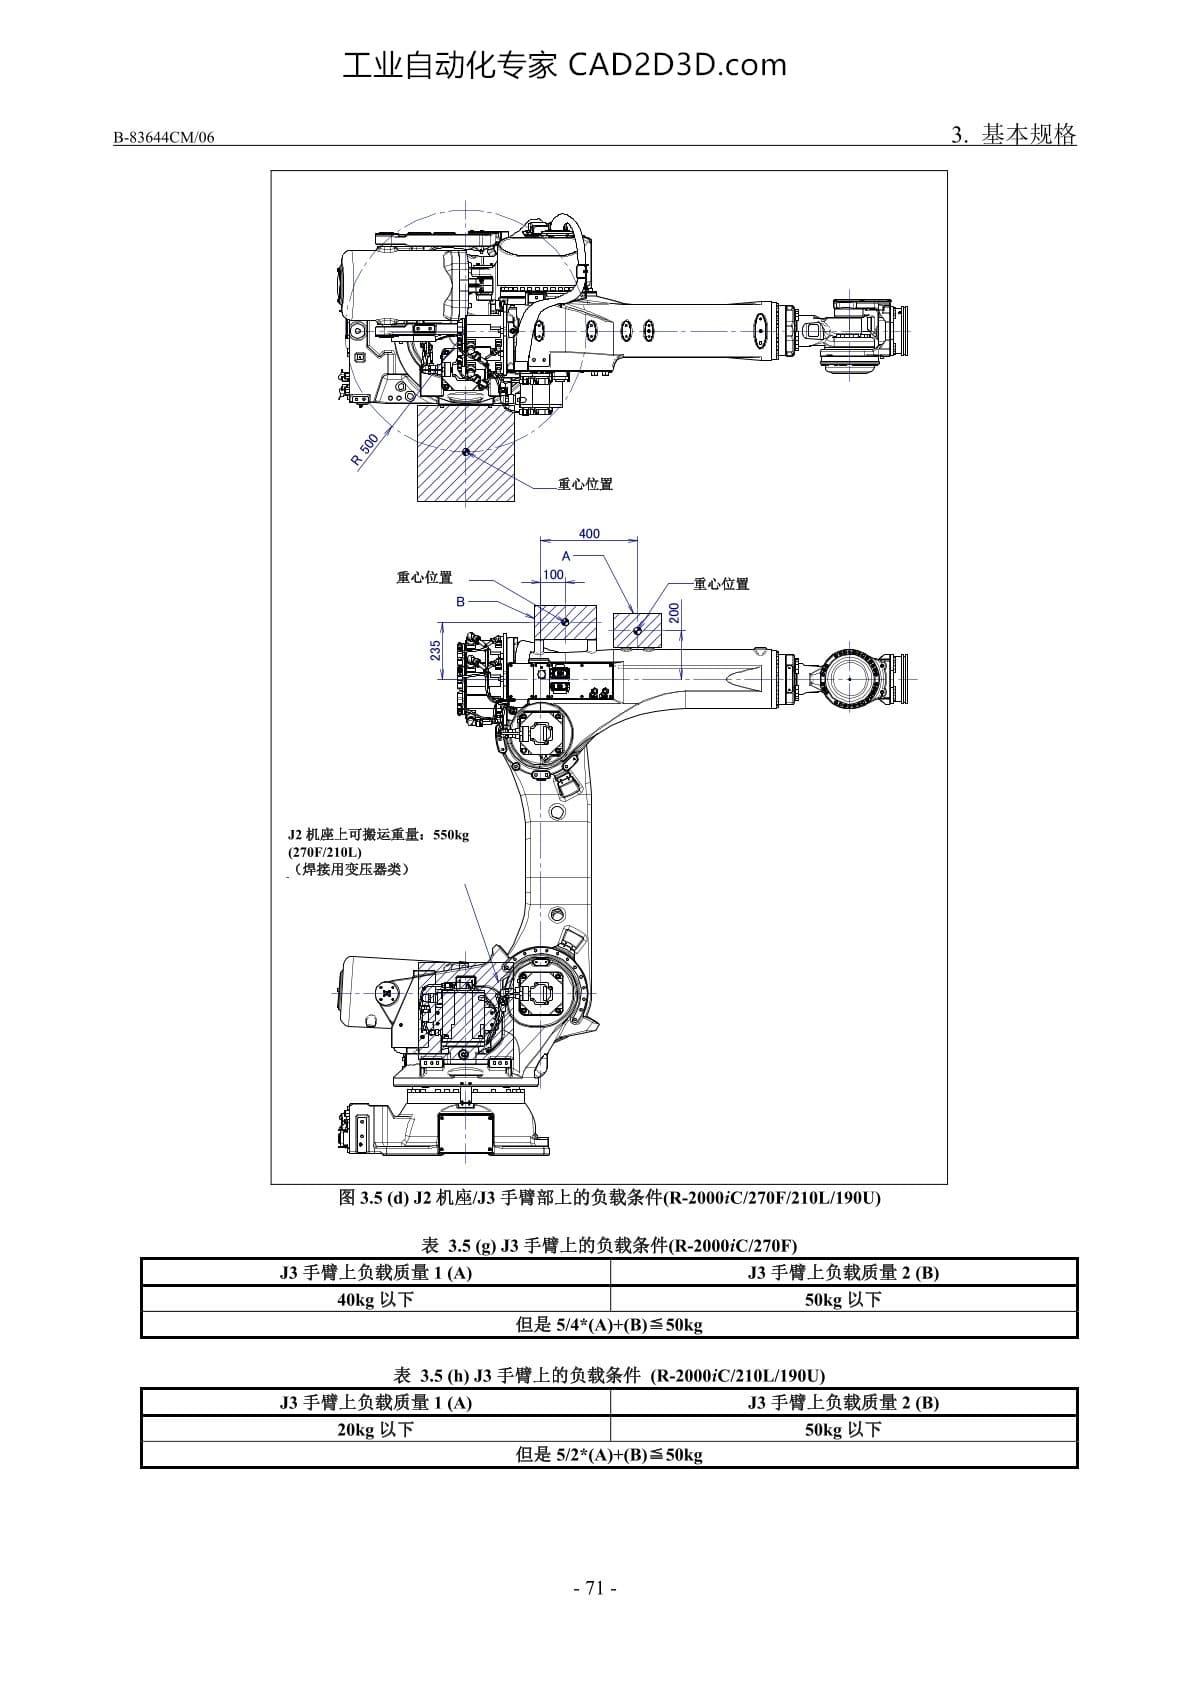 J2机座/J3手臂/J3外壳的负载条件（R-2000iC/270F/210L/190U）